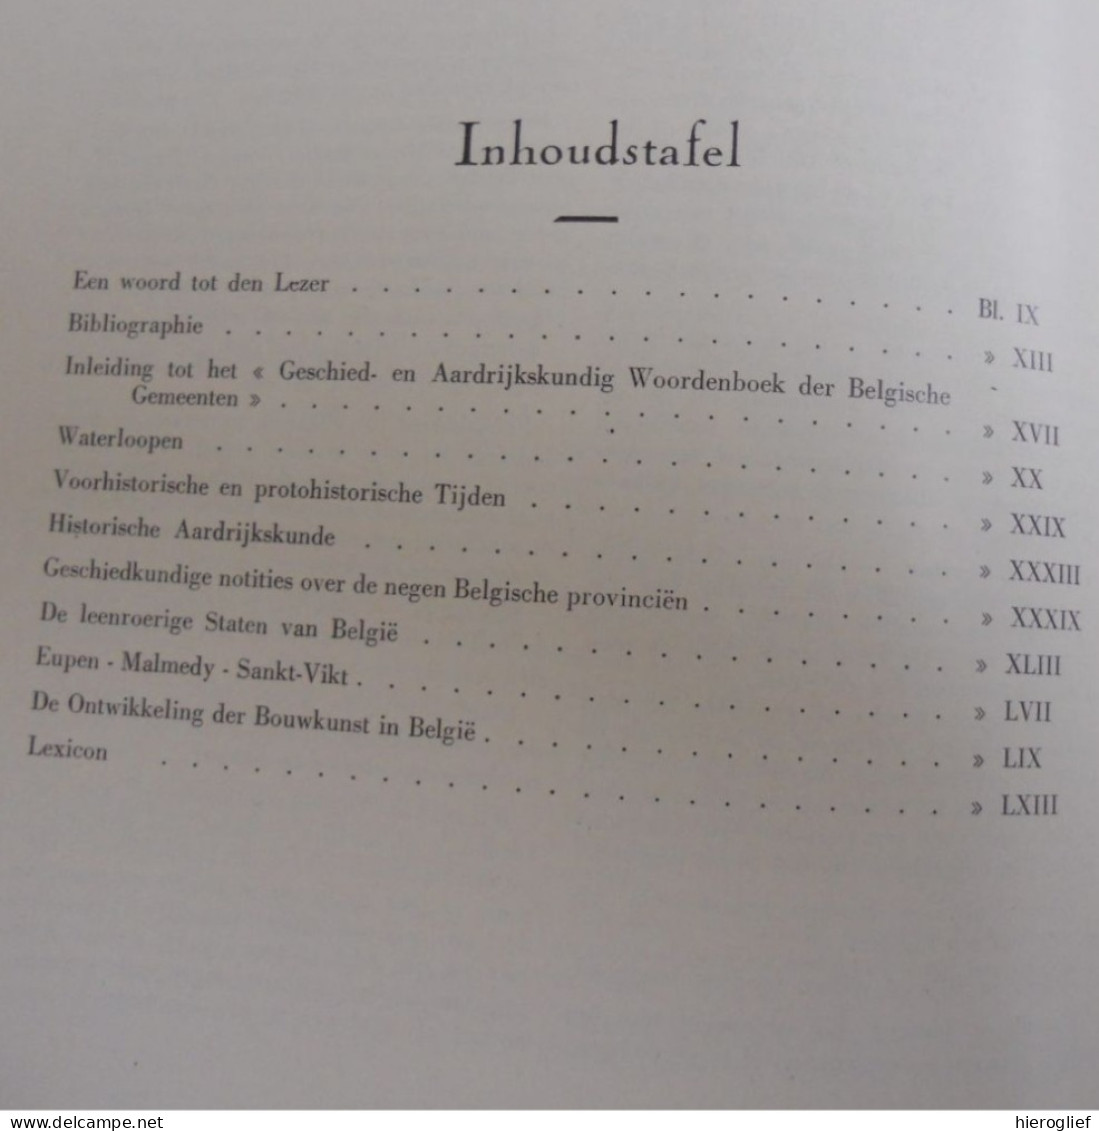 Geschiedkundig En Aardrijkskundig Woordenboek Der Belgische Gemeenten 1 & 2 - Eug. De Seyn ° Roeselare + Etterbeek - Historia